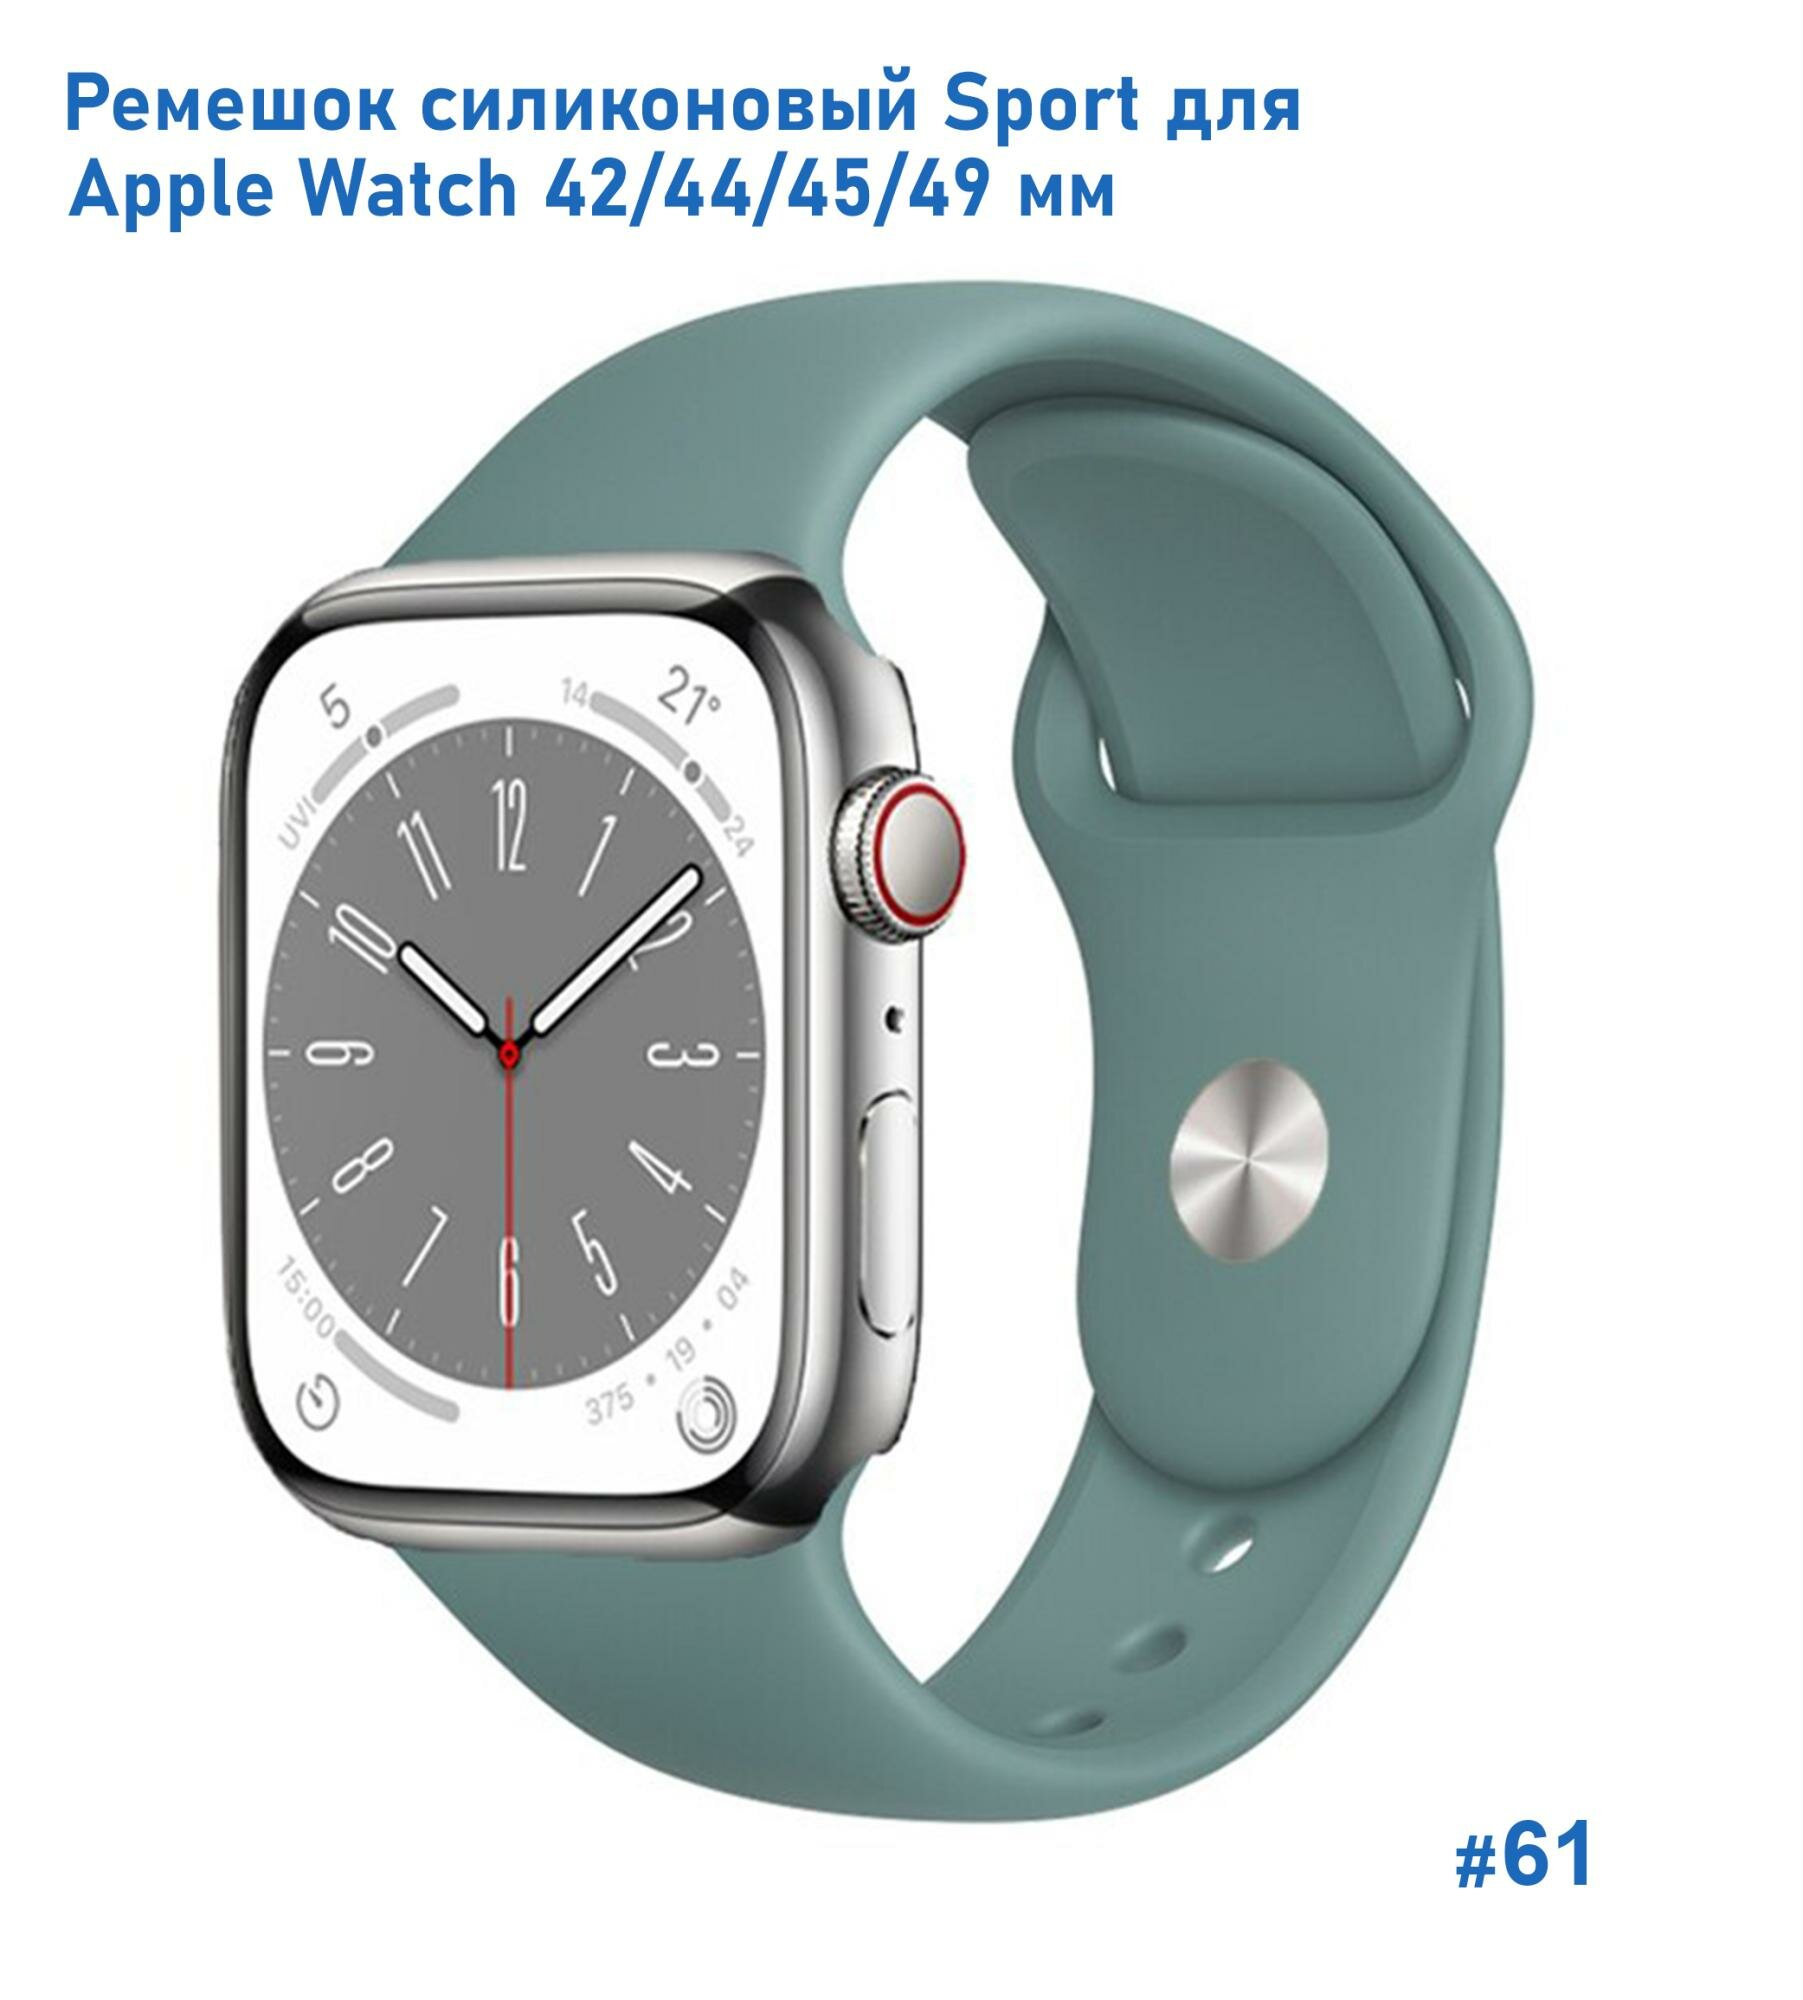 Ремешок силиконовый Sport для Apple Watch 42/44/45/49 мм, на кнопке, зеленый кактус (61)